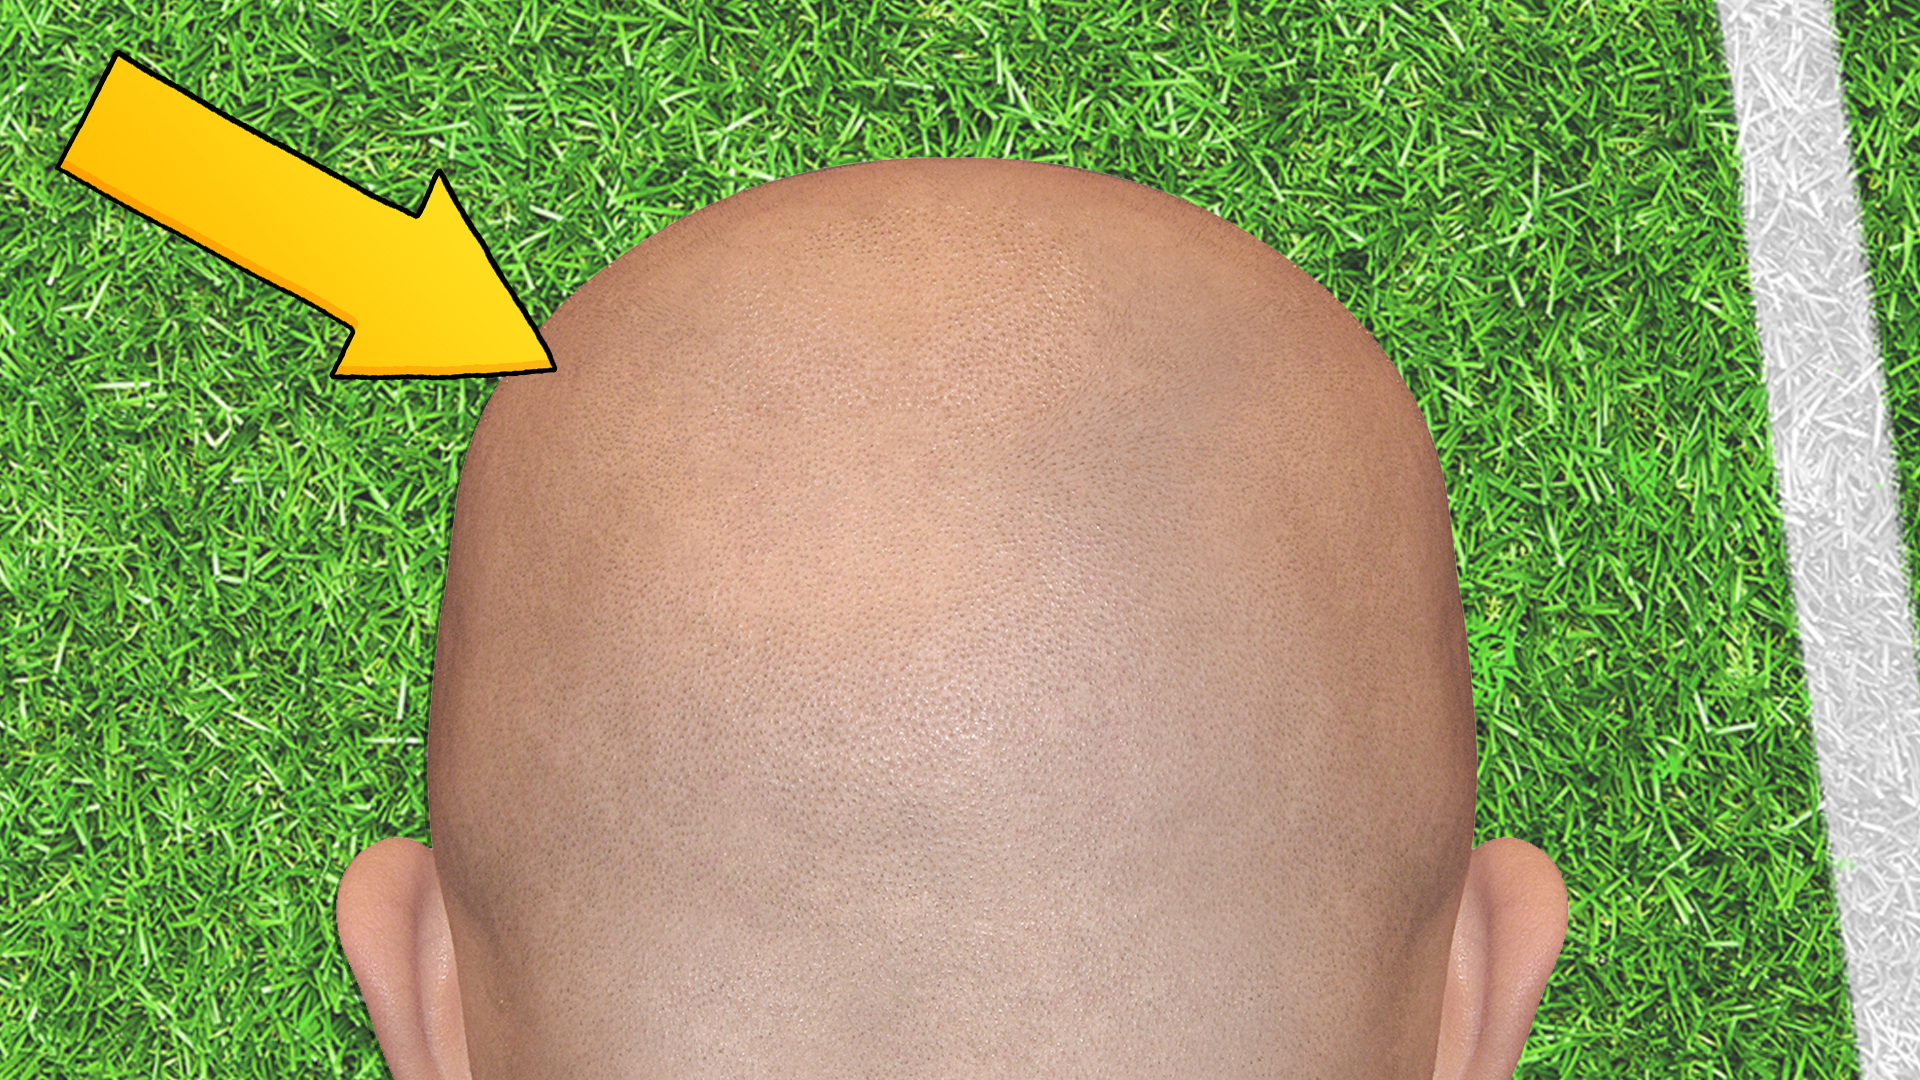 A bald head